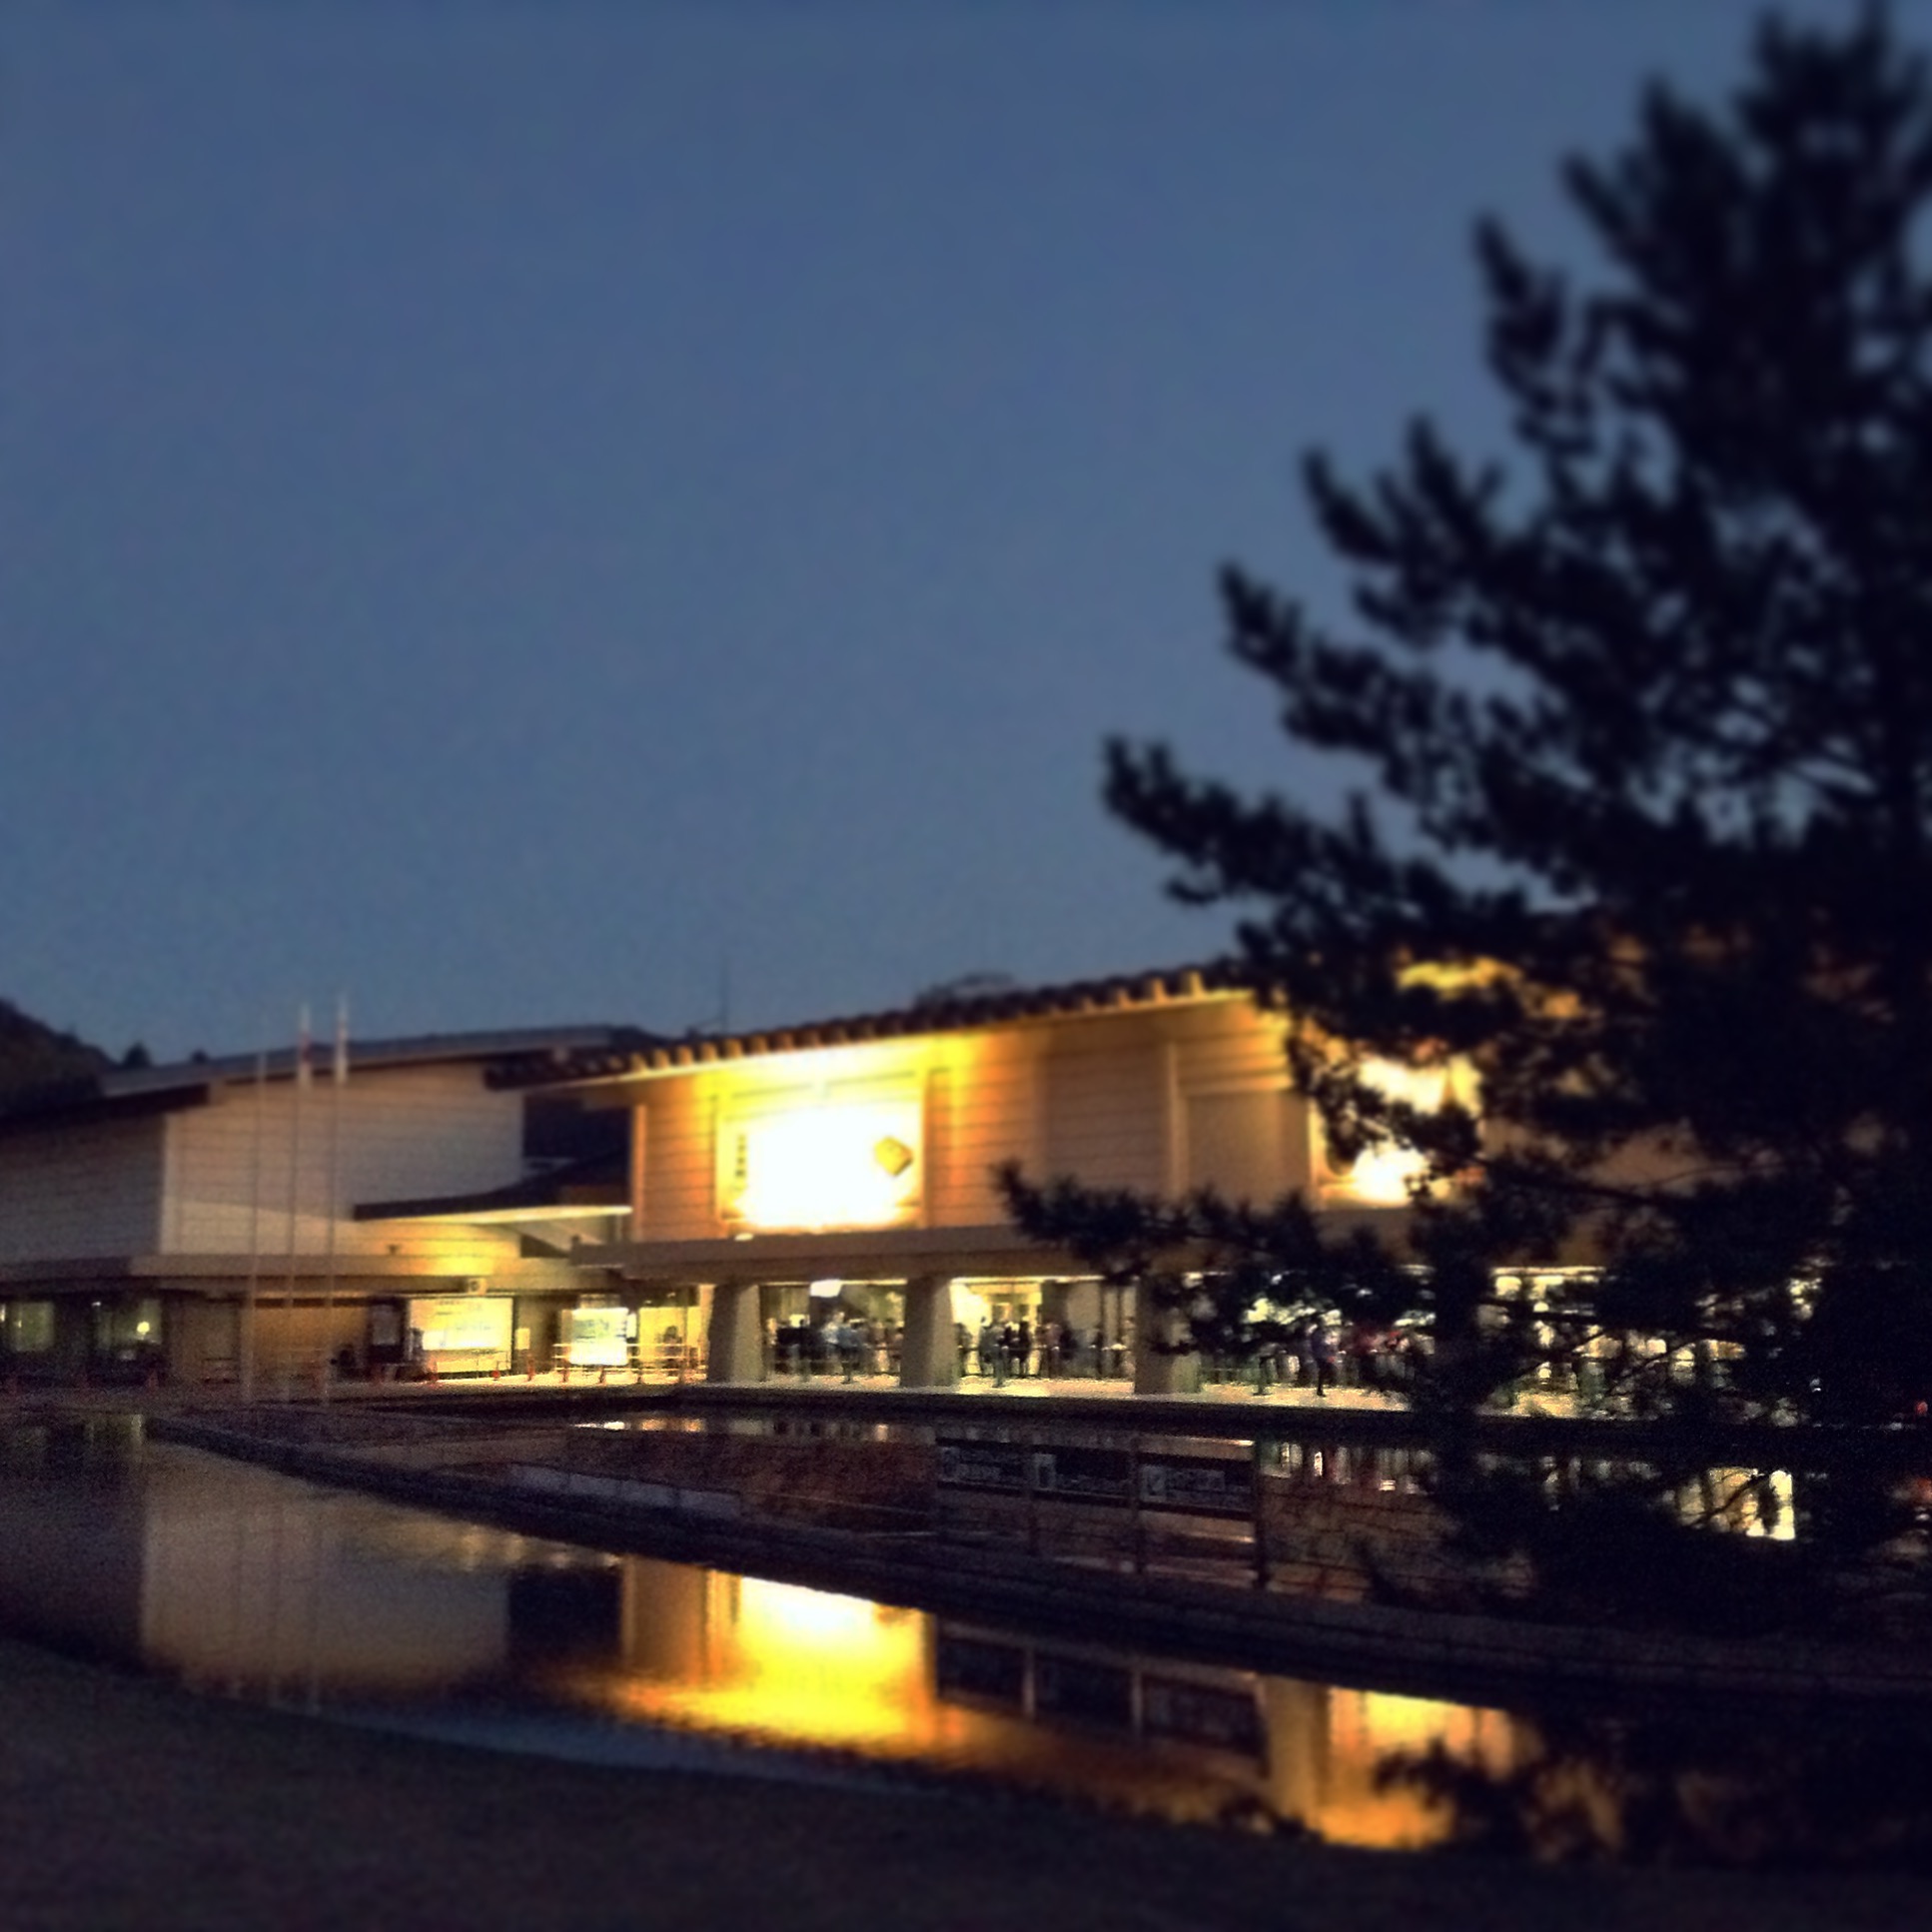 正倉院展開催中の奈良国立博物館の様子